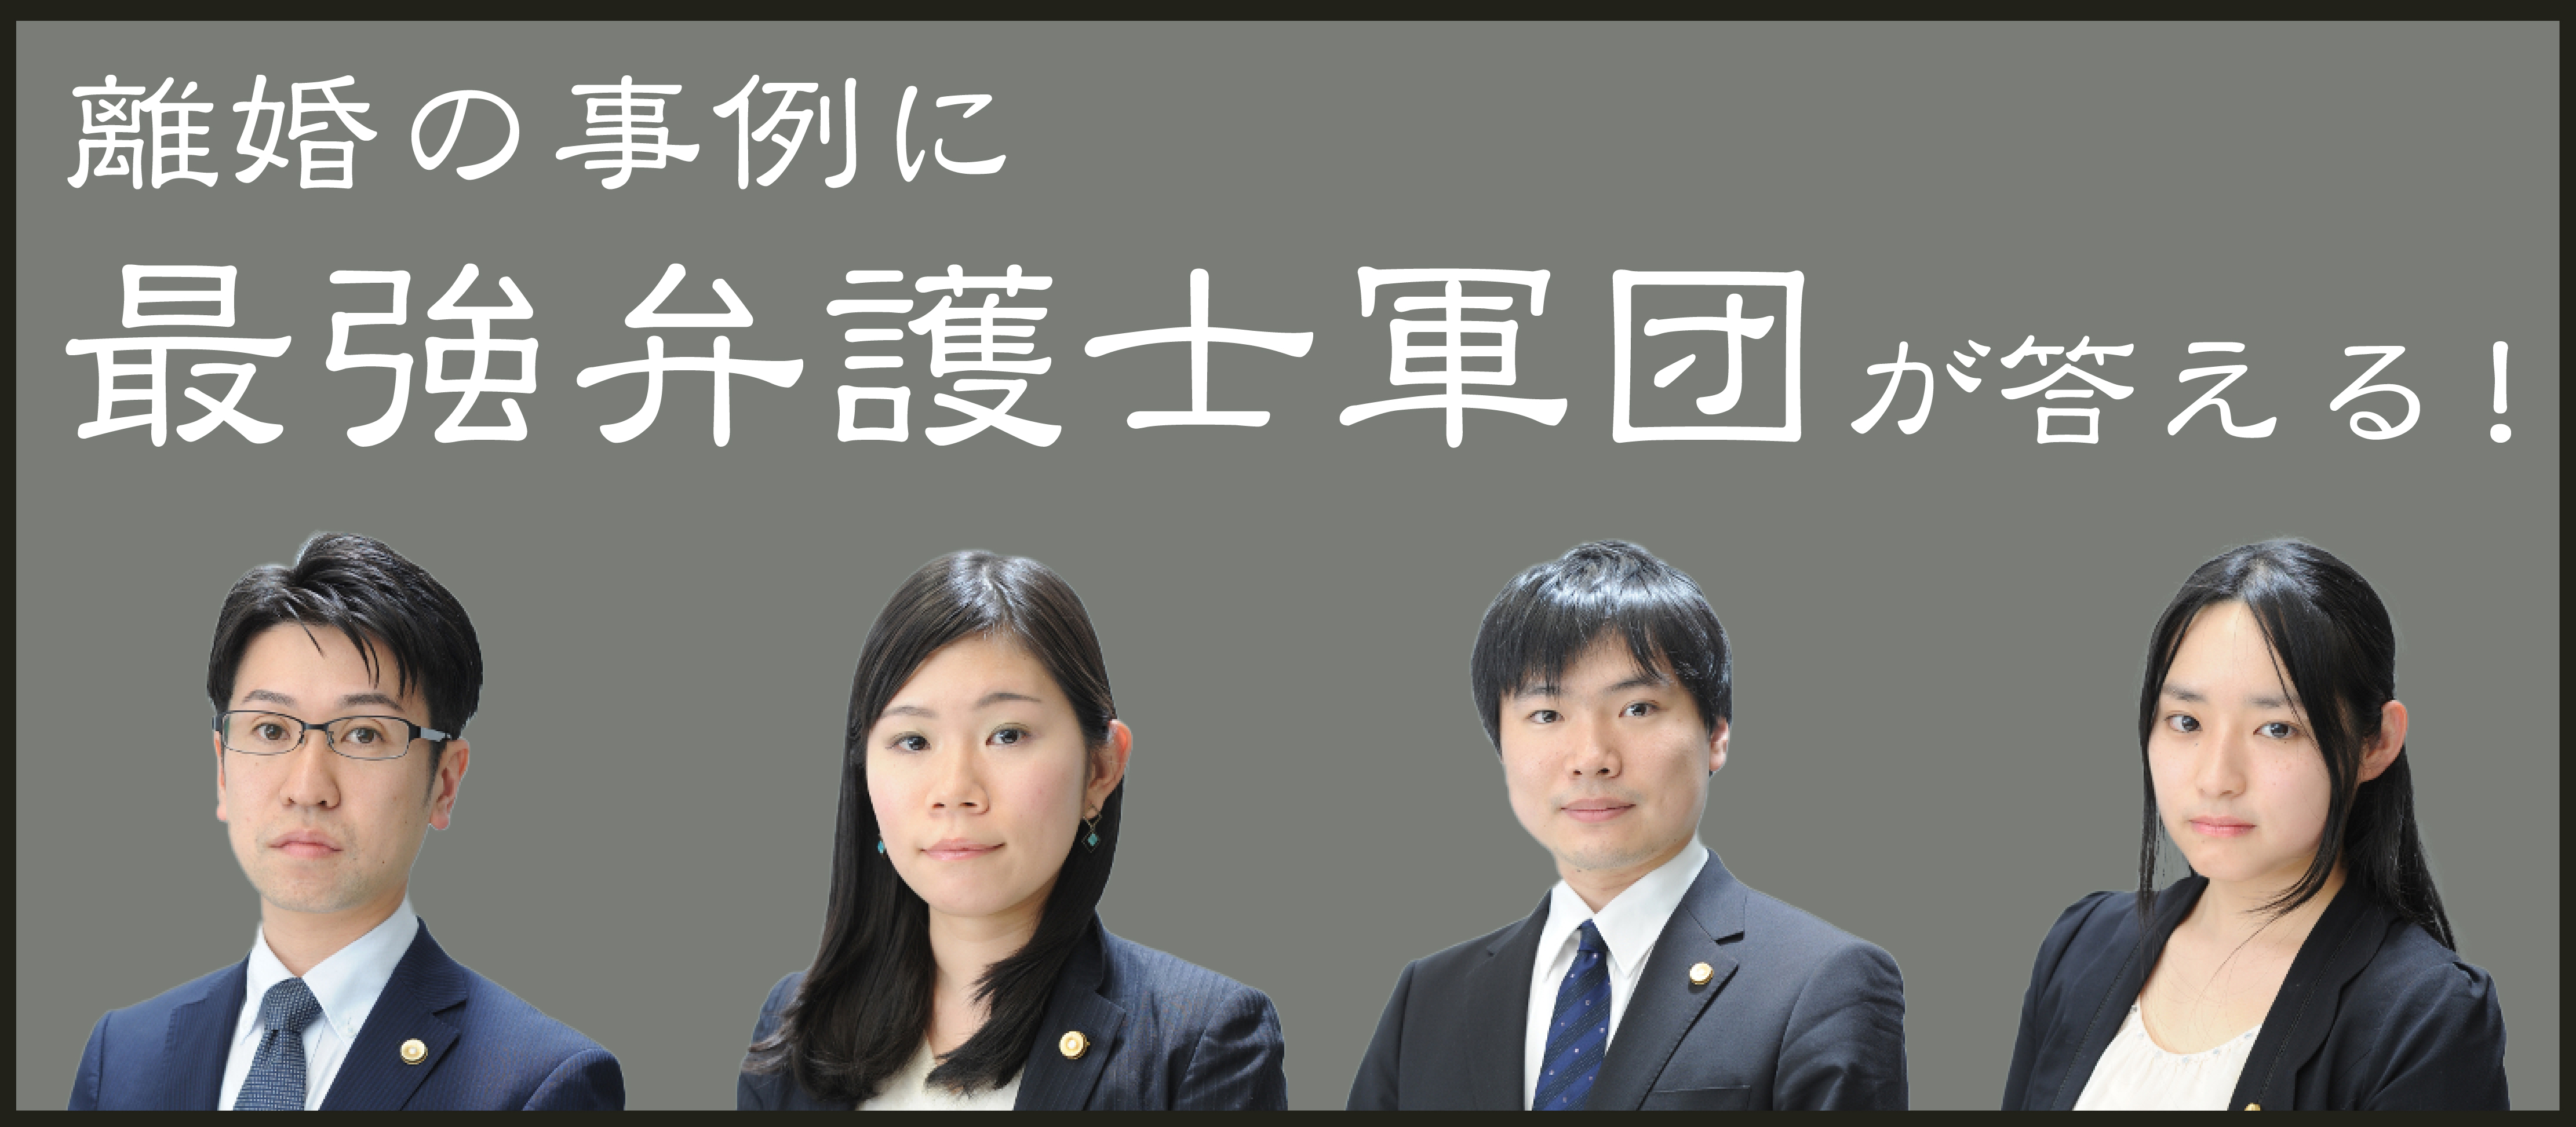 弁護士が答える 家事もしない無職夫と離婚したい 養育費はもらえますか 神奈川県在住で契約社員34歳女性の場合 シン家族会議